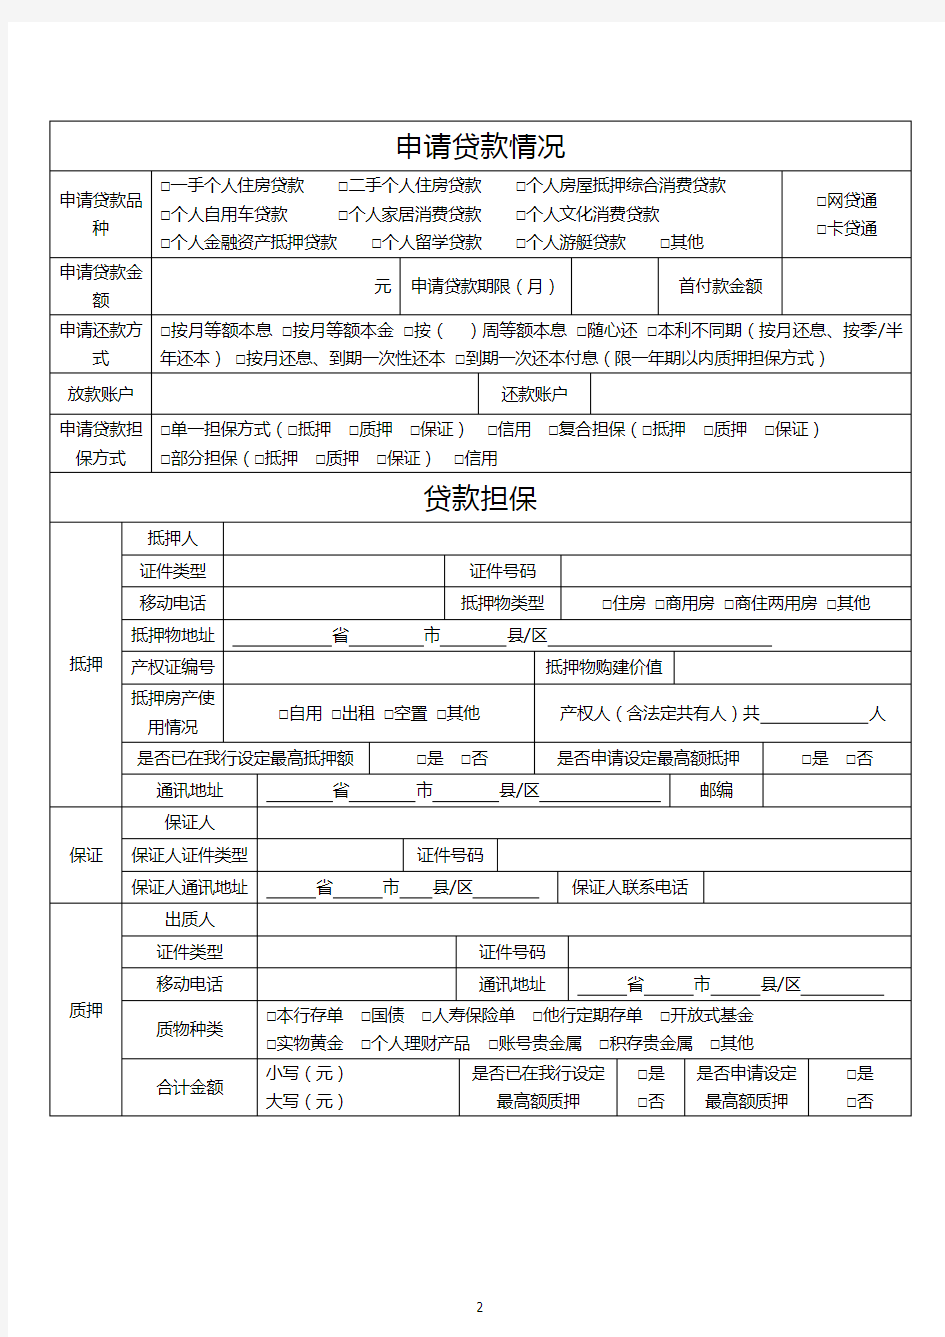 中国工商银行个人贷款申请表